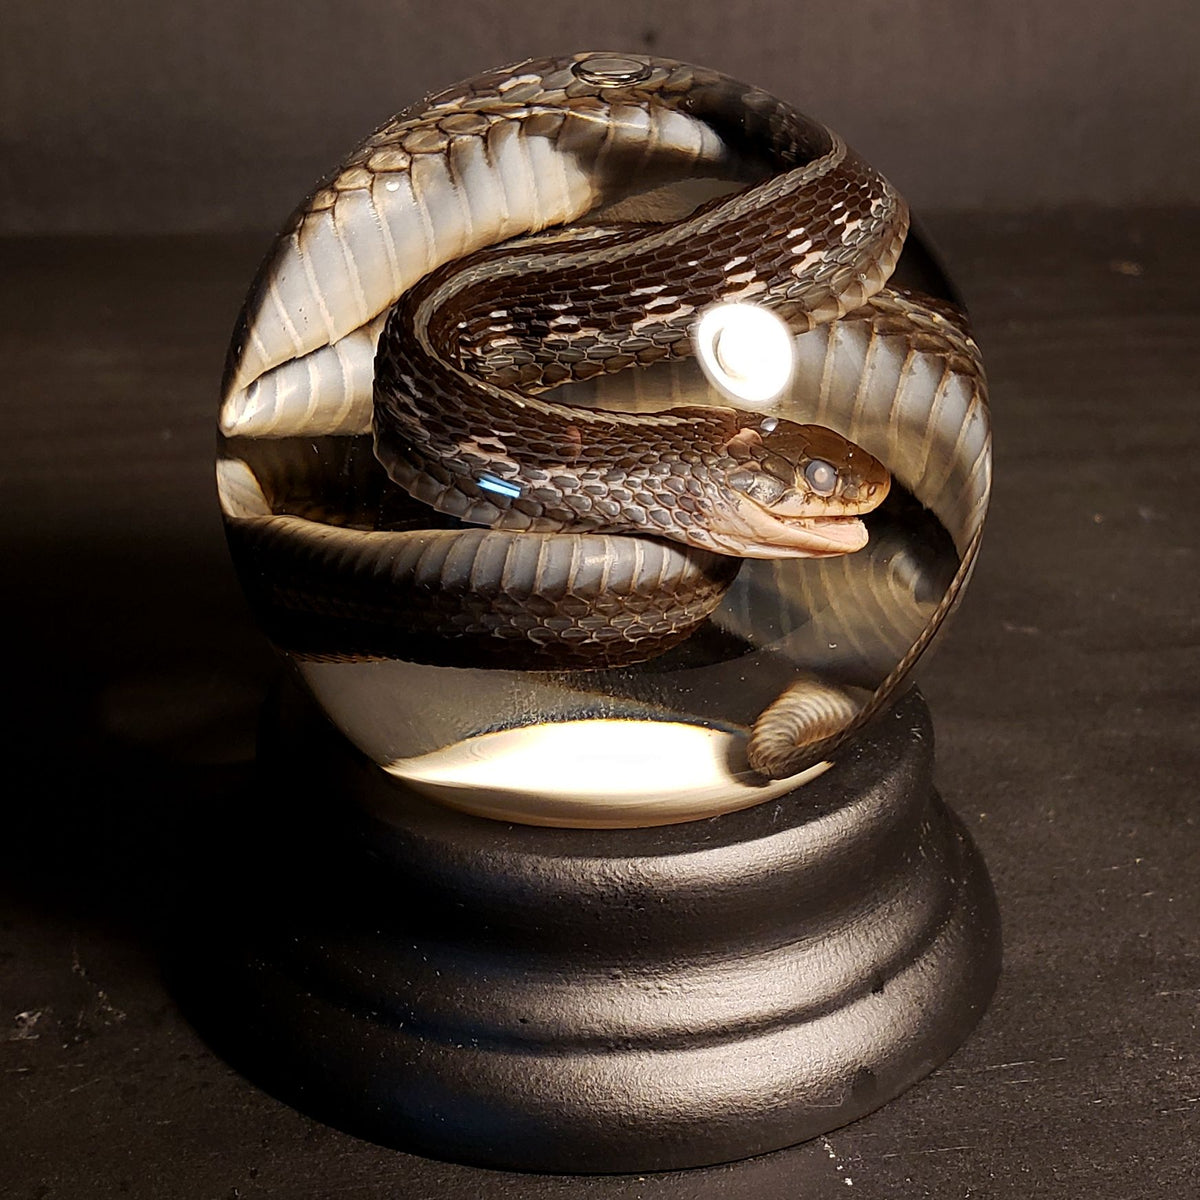 garter snake eating mouse